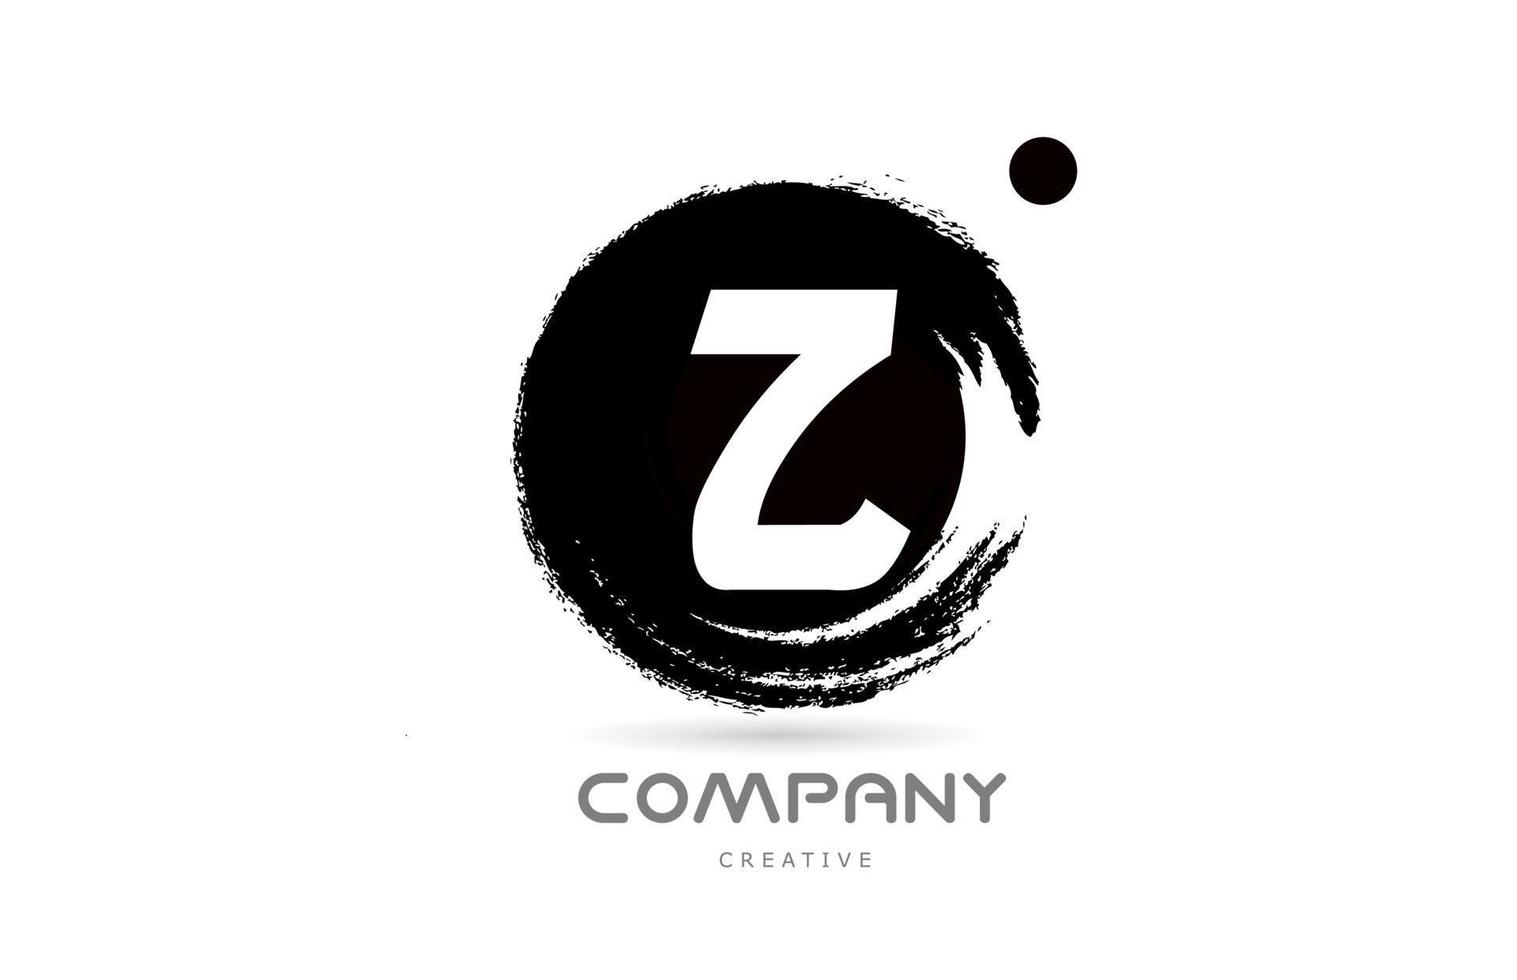 z projeto do ícone do logotipo da letra do alfabeto grunge preto e branco com letras de estilo japonês. modelo criativo para empresa e negócios vetor